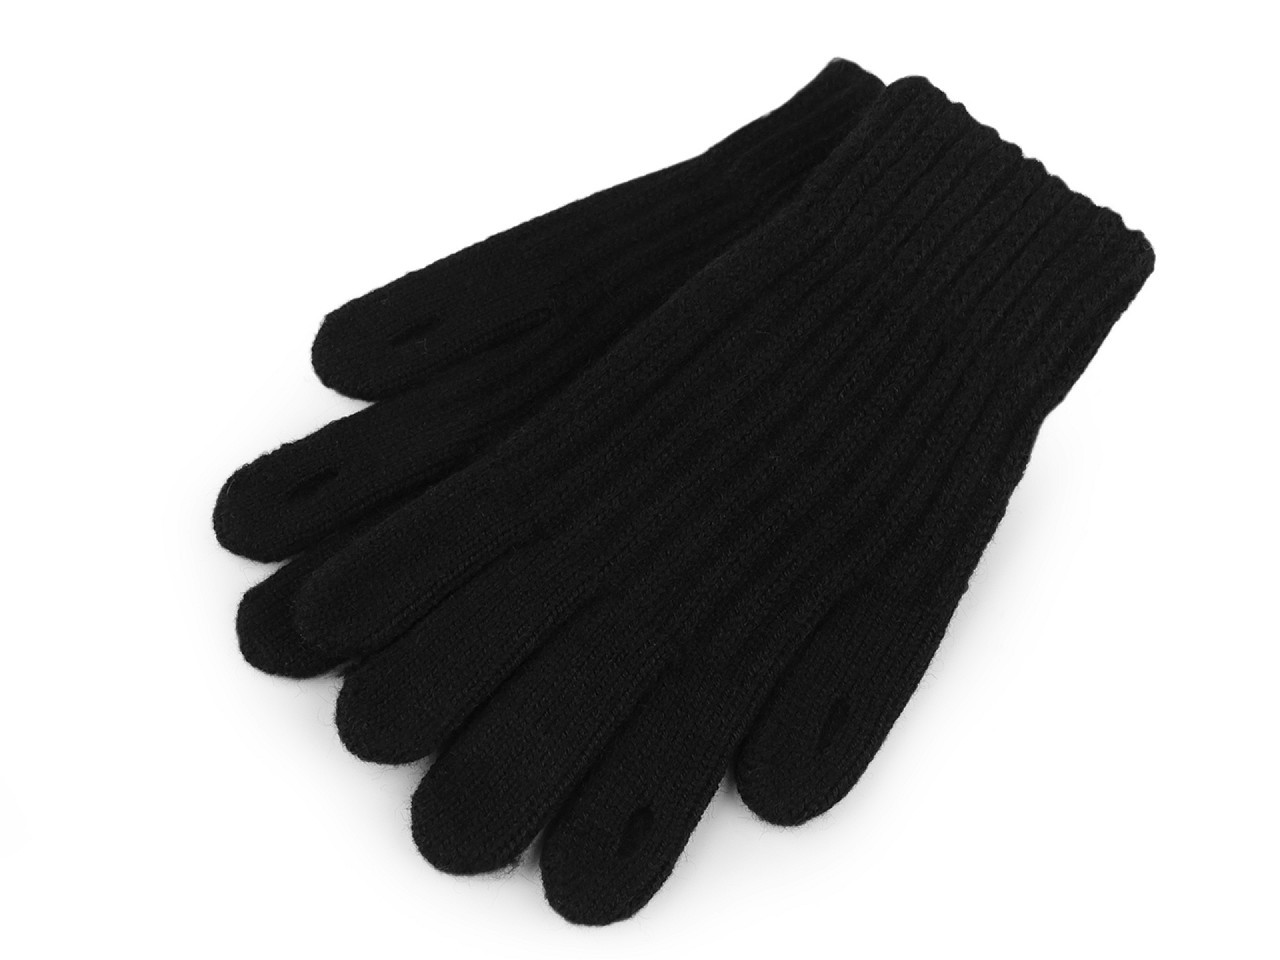 Pletené rukavice s otvory pro ovládání dotykových zařízení, barva 3 černá